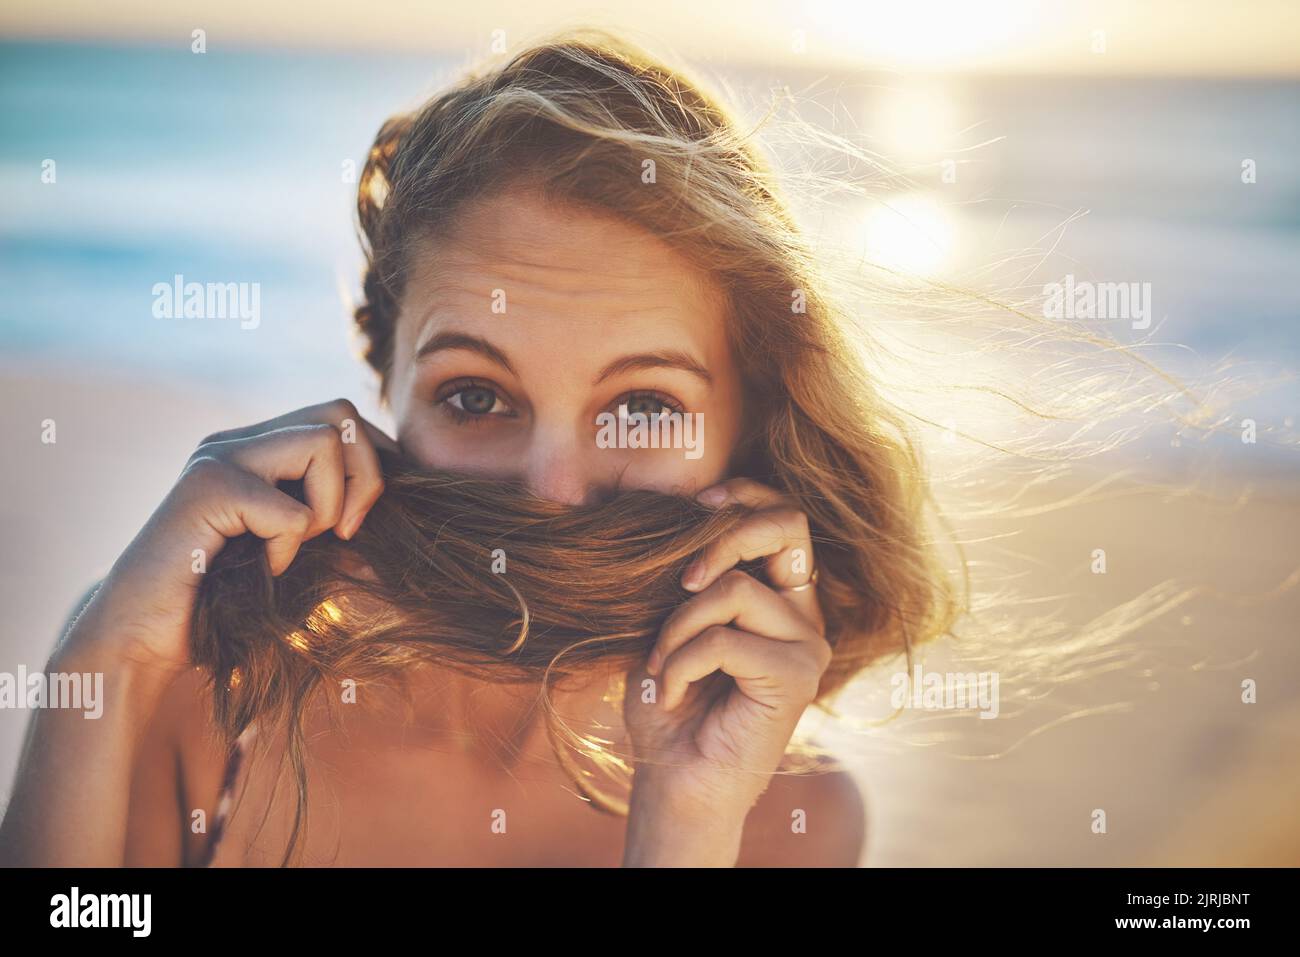 Adoro il profumo dei capelli da spiaggia, una giovane donna che copriva la bocca con i capelli. Foto Stock